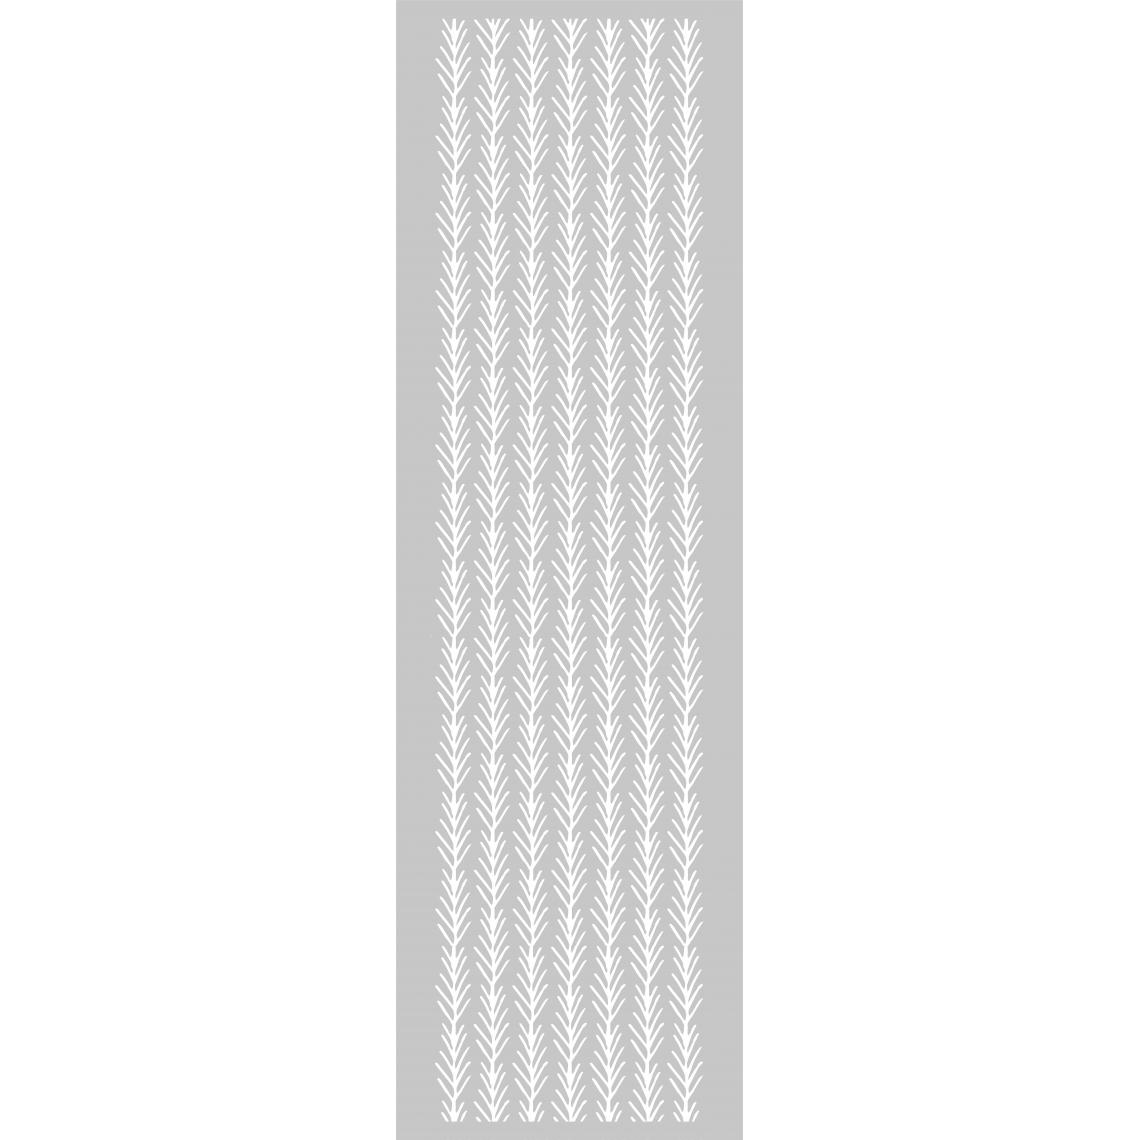 Alter - Tapis de cuisine, 100% Made in Italy, Tapis antitache avec impression numérique, Tapis antidérapant et lavable, Modèle Amélie, cm 180x52 - Tapis